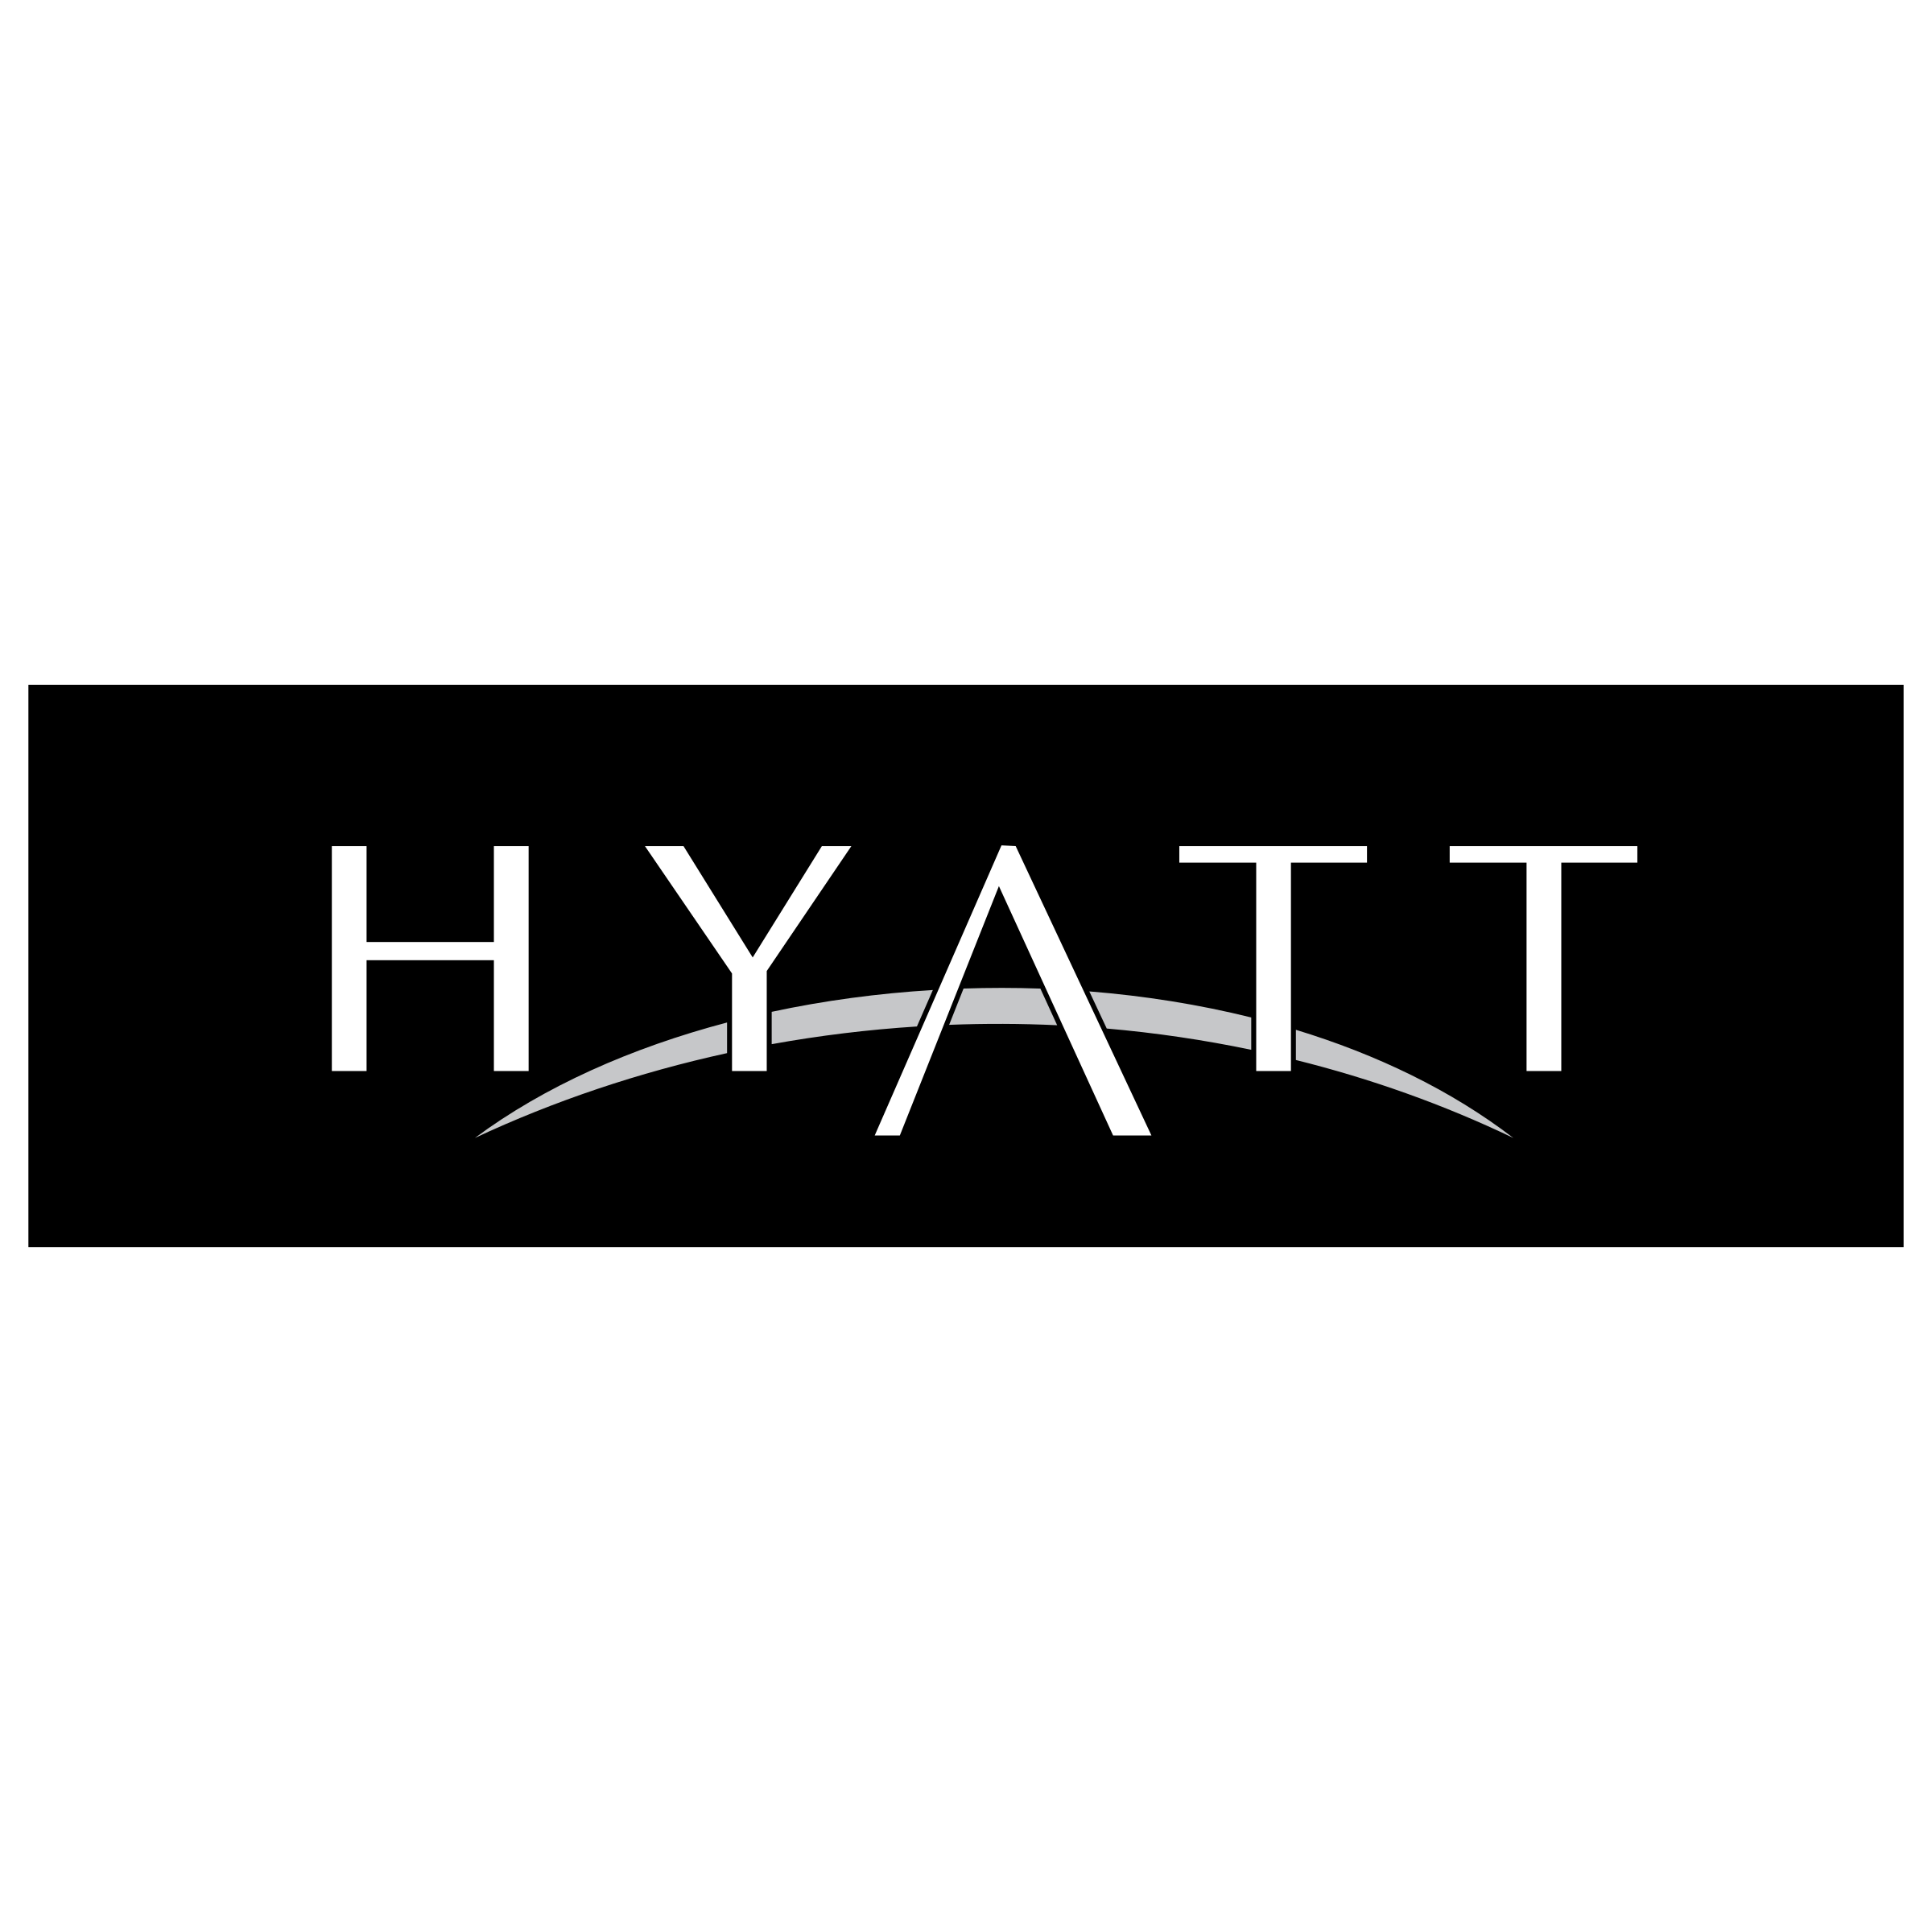 Hyatt.png